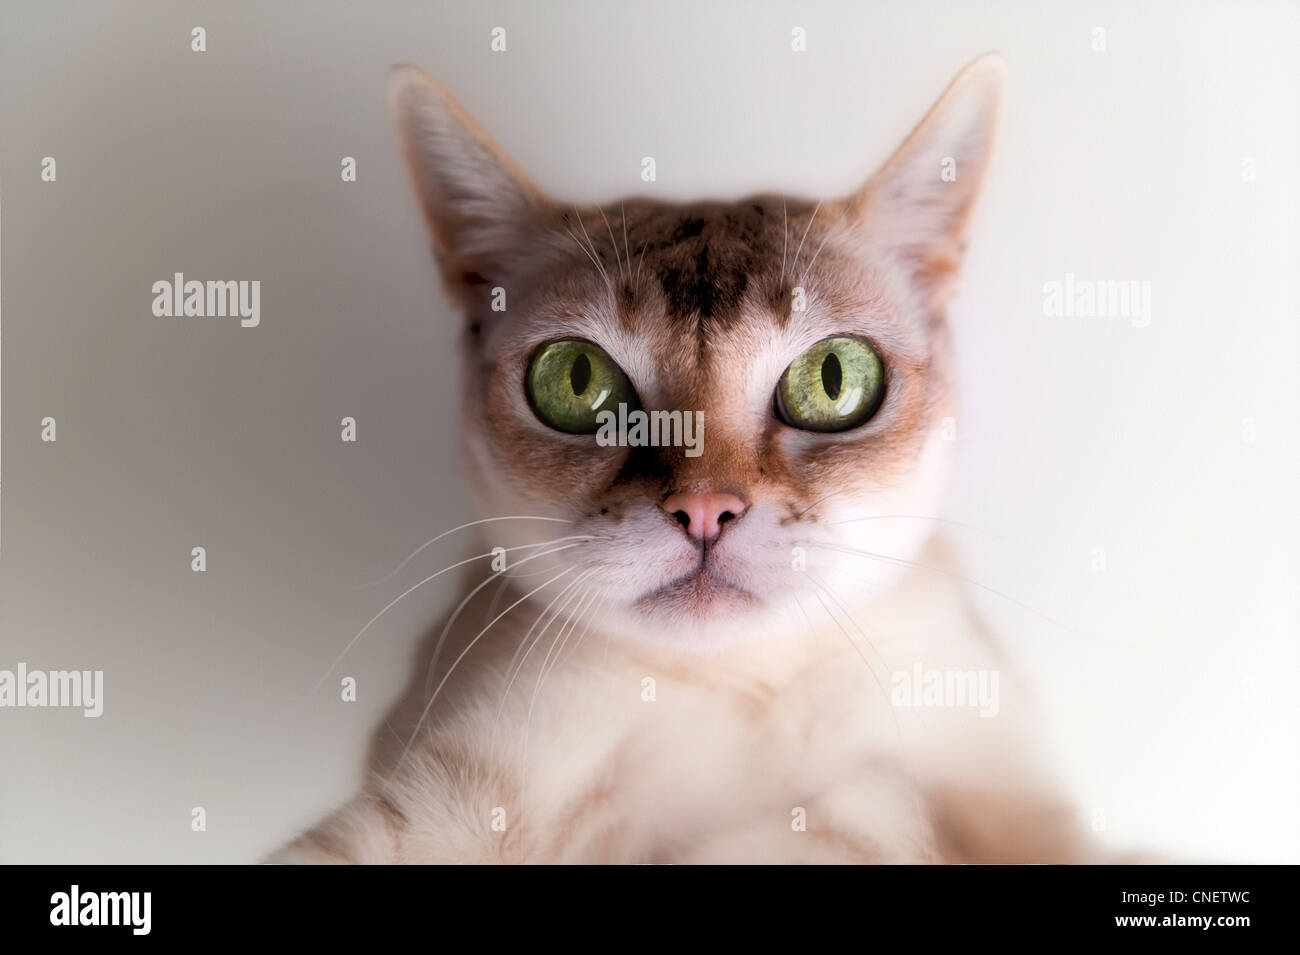 Carino piccolo Singapore Cat staring, con grandi occhi verdi, espressione enigmatica Foto Stock